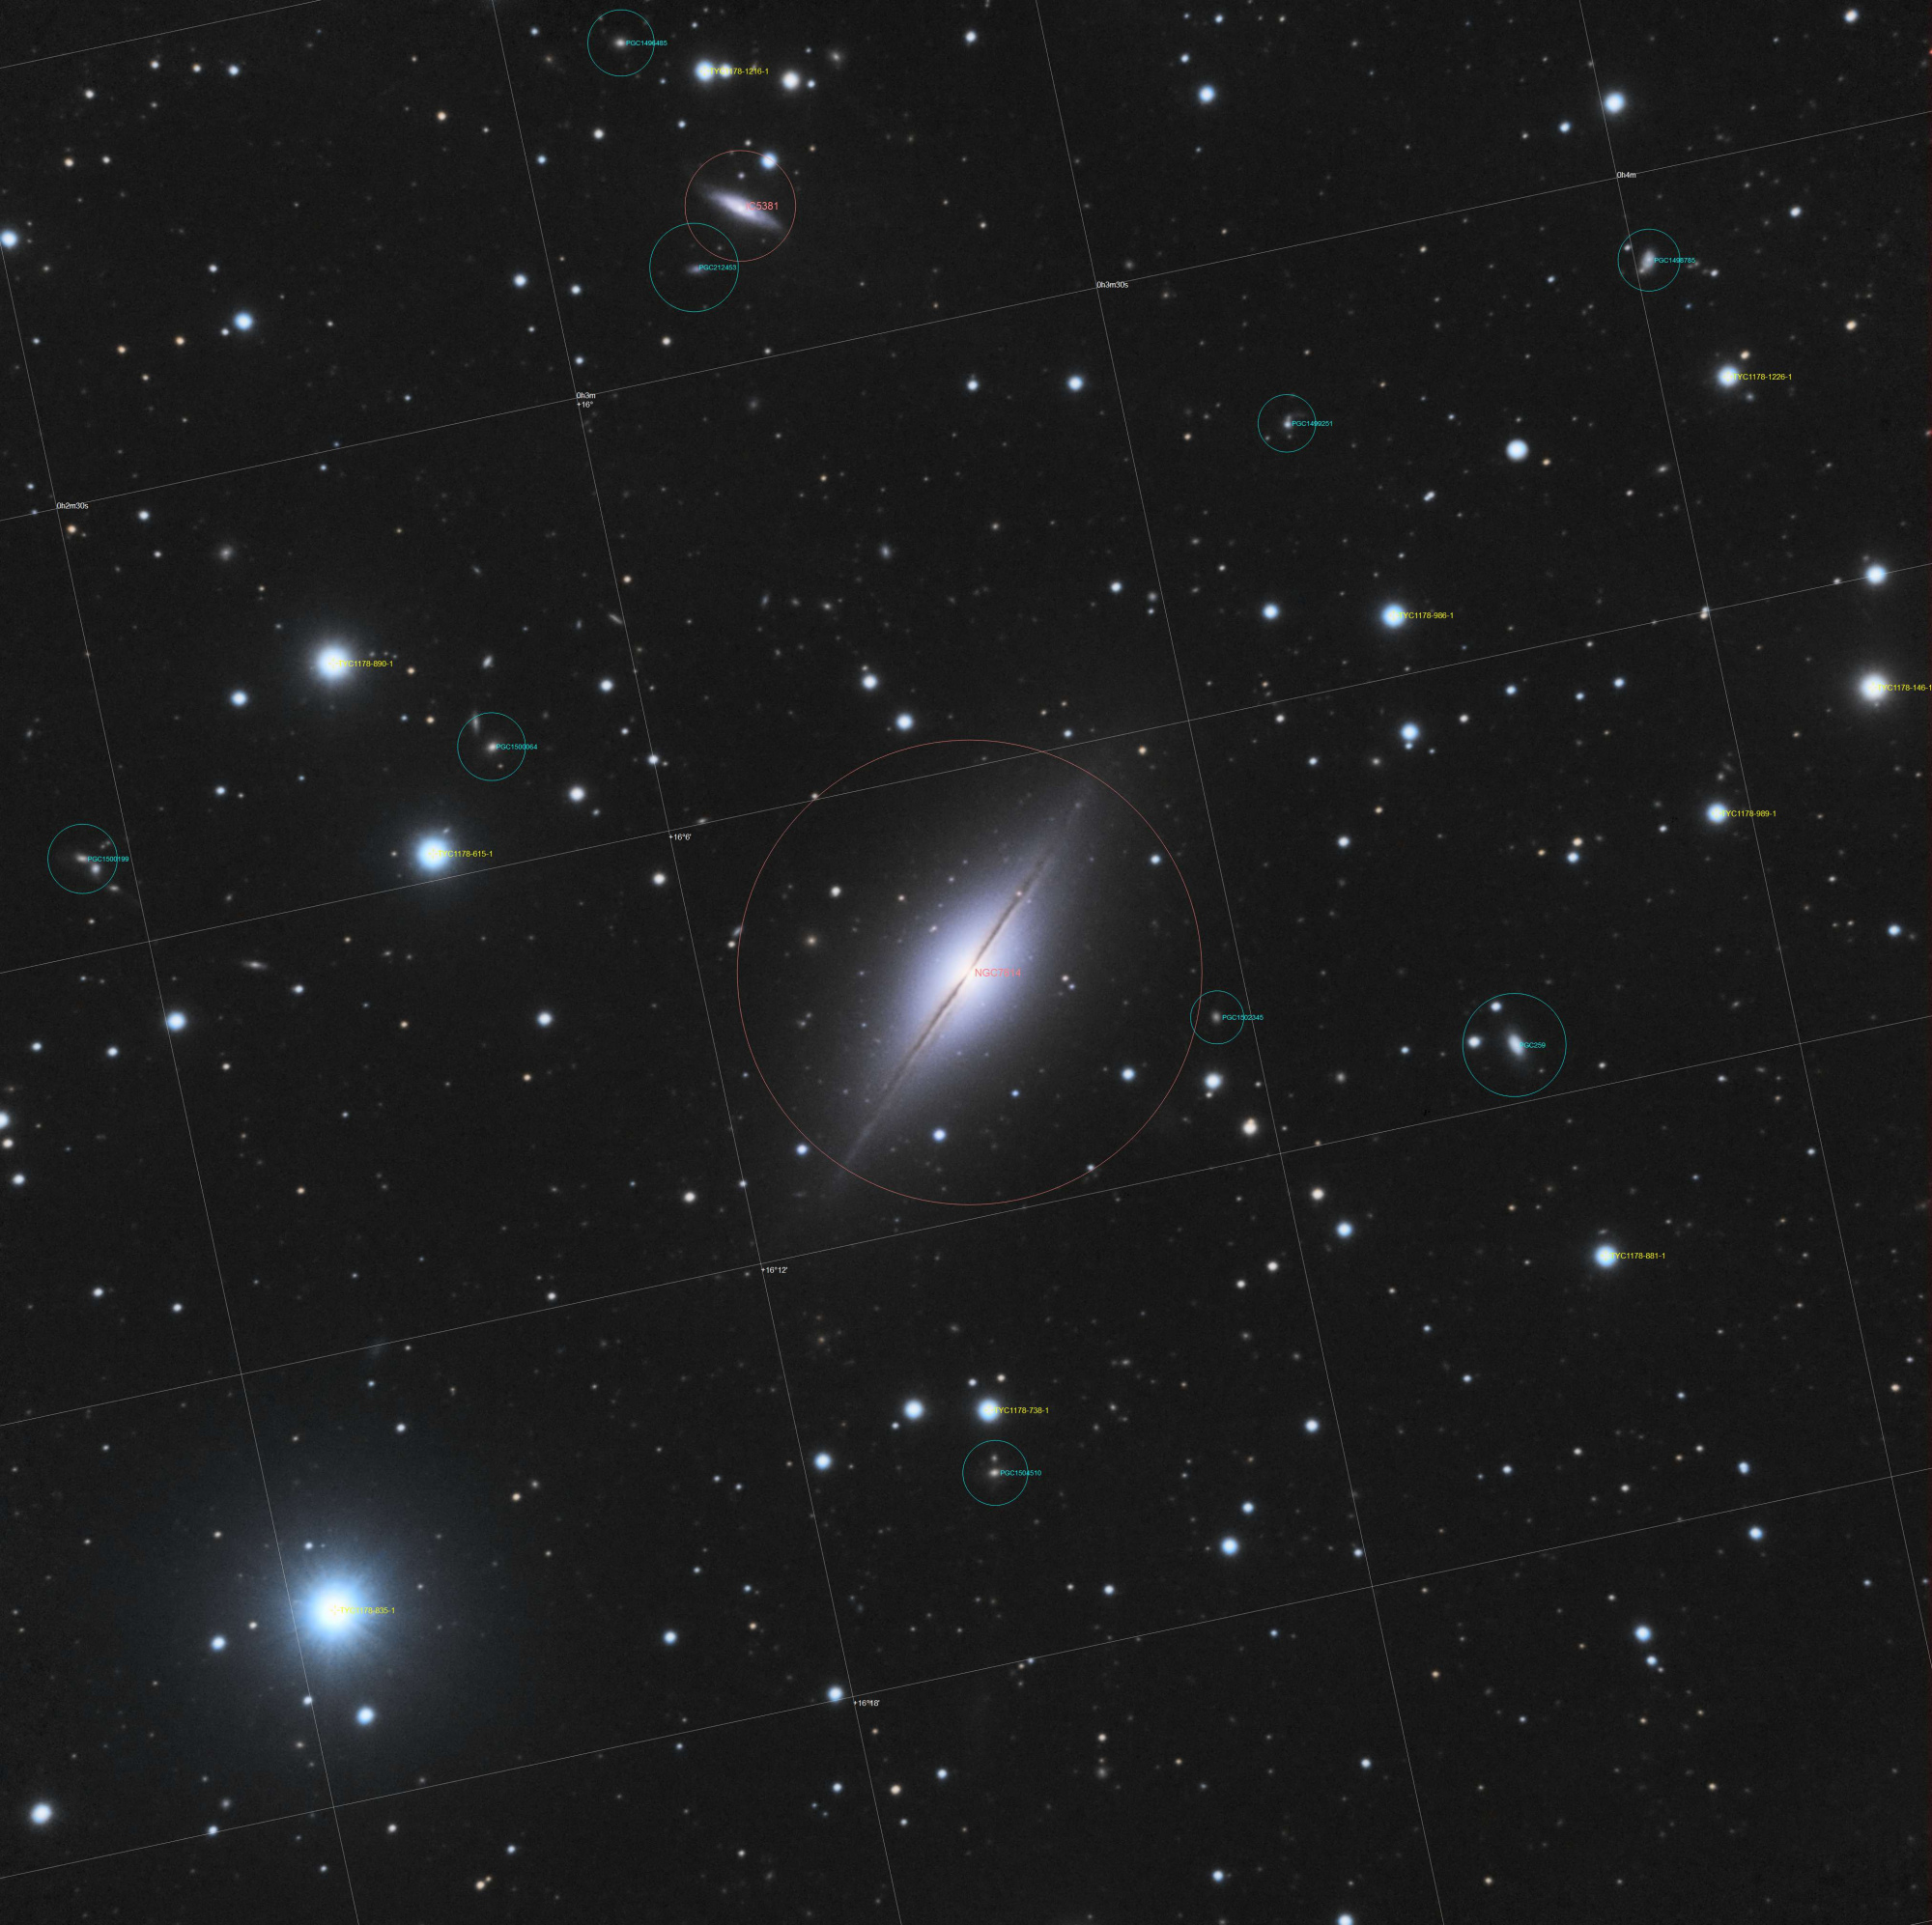 5c2a0a07dcf13_NGC7814annnote.thumb.jpg.36feb8b8c1613a8a5d920037ec668bf7.jpg